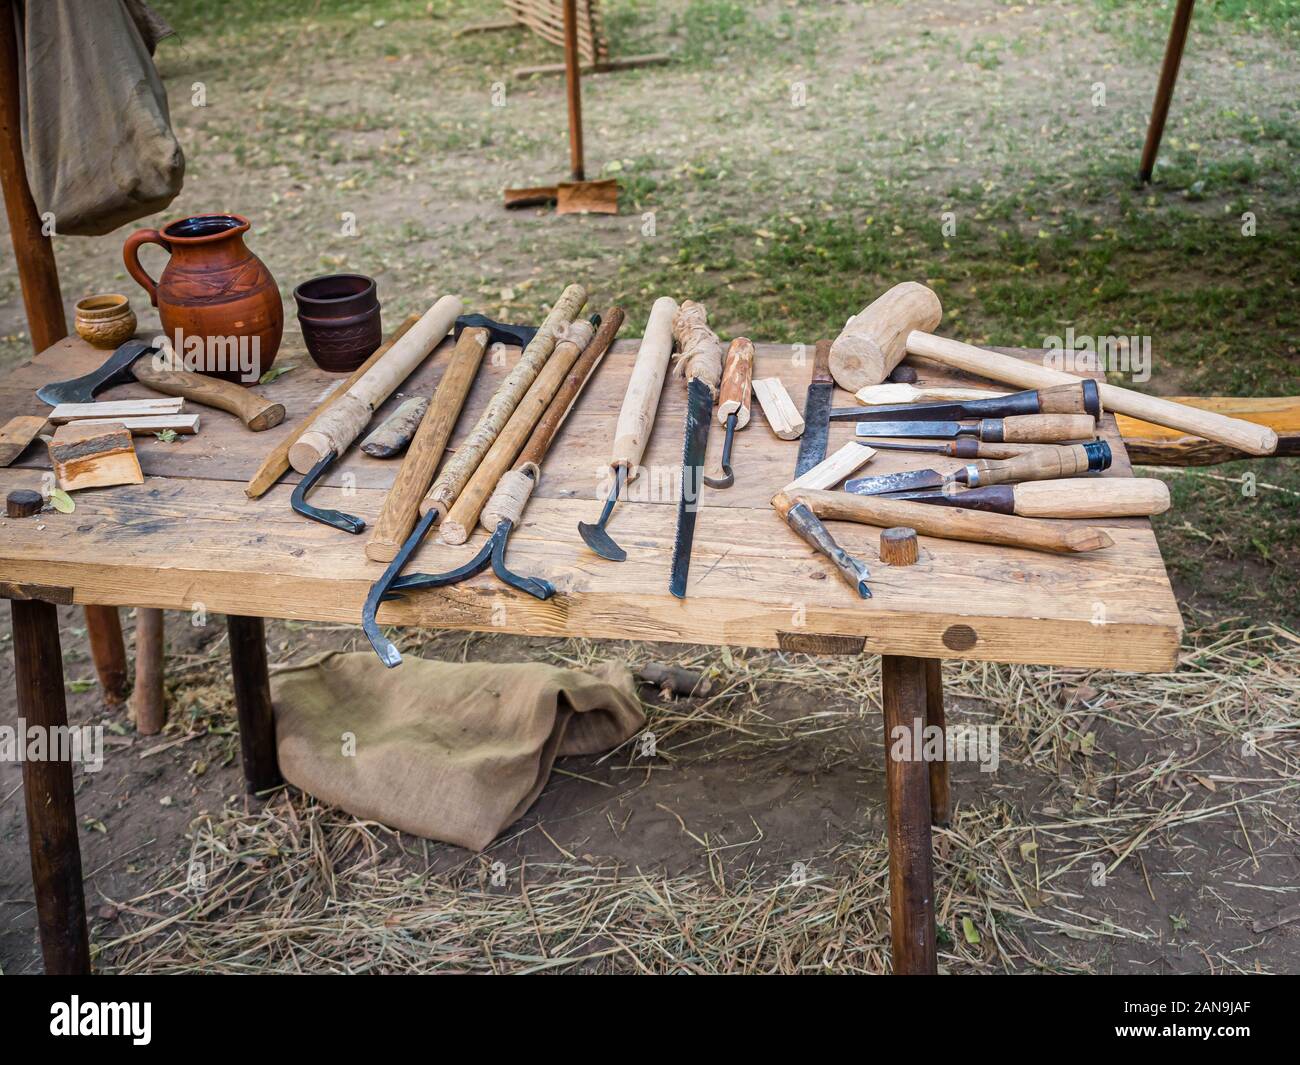 Alte Holzbearbeitung Werkzeug Hand: Holz- Ebene, Meißel Axt,  Vorschlaghammer, Hammer und in einer Schreinerei auf schmutzigen rustikalen  Tisch mit Sägespänen abgedeckt Stockfotografie - Alamy